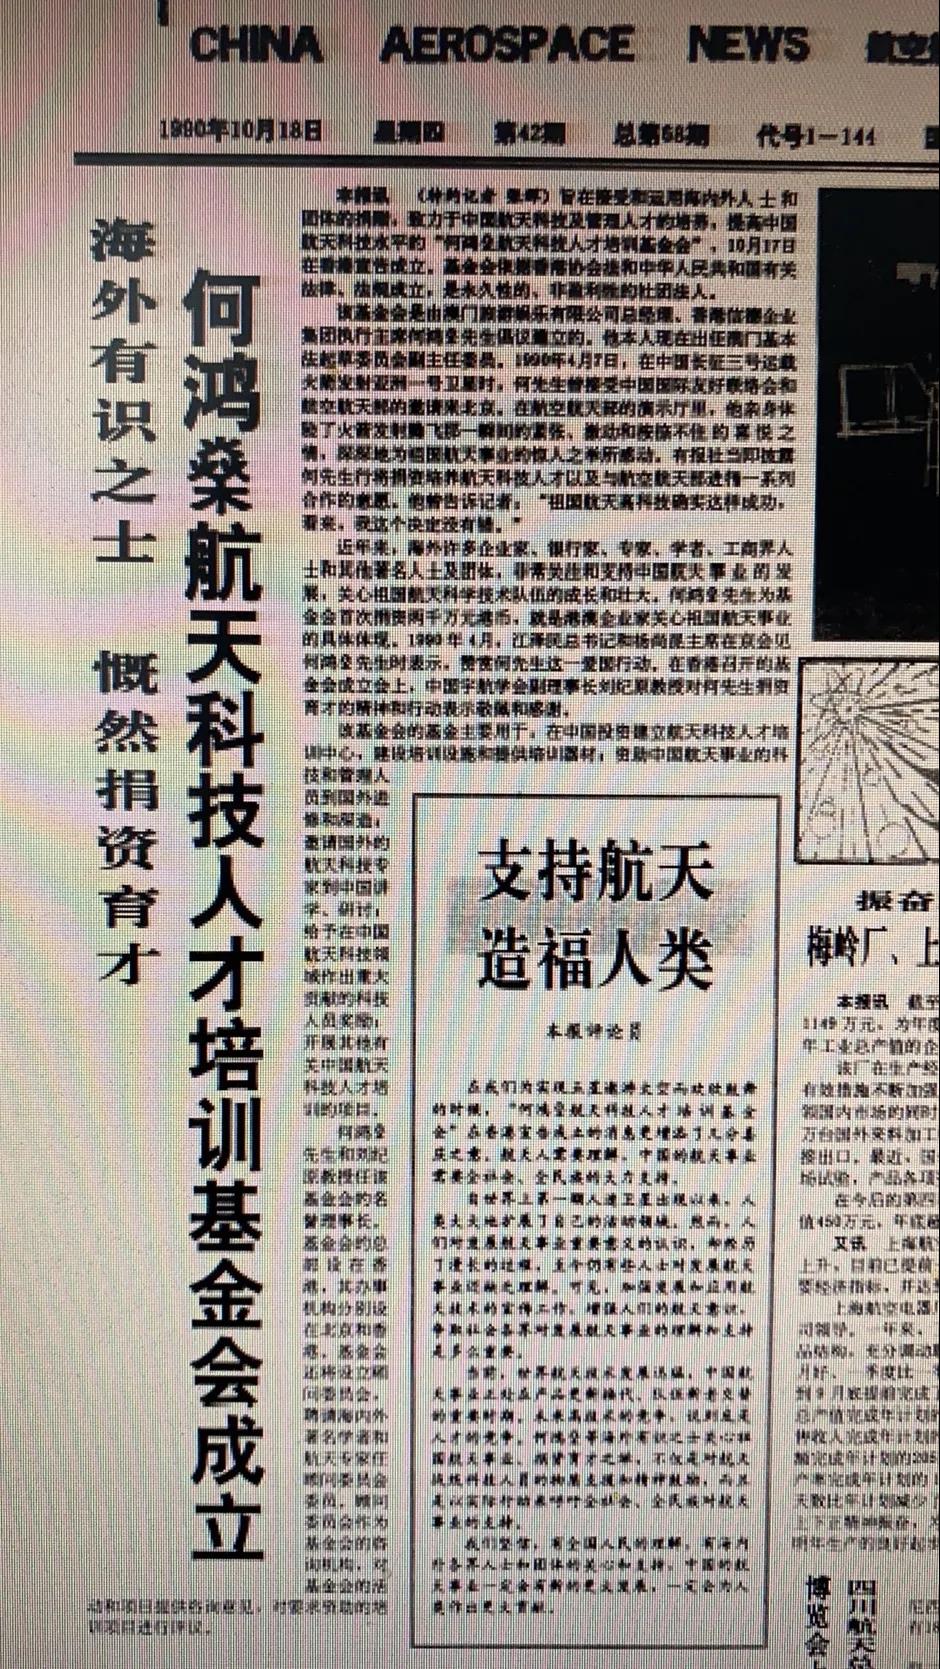 中国航天报刊文：何鸿燊一路走好，谢谢你支持中国航天30年